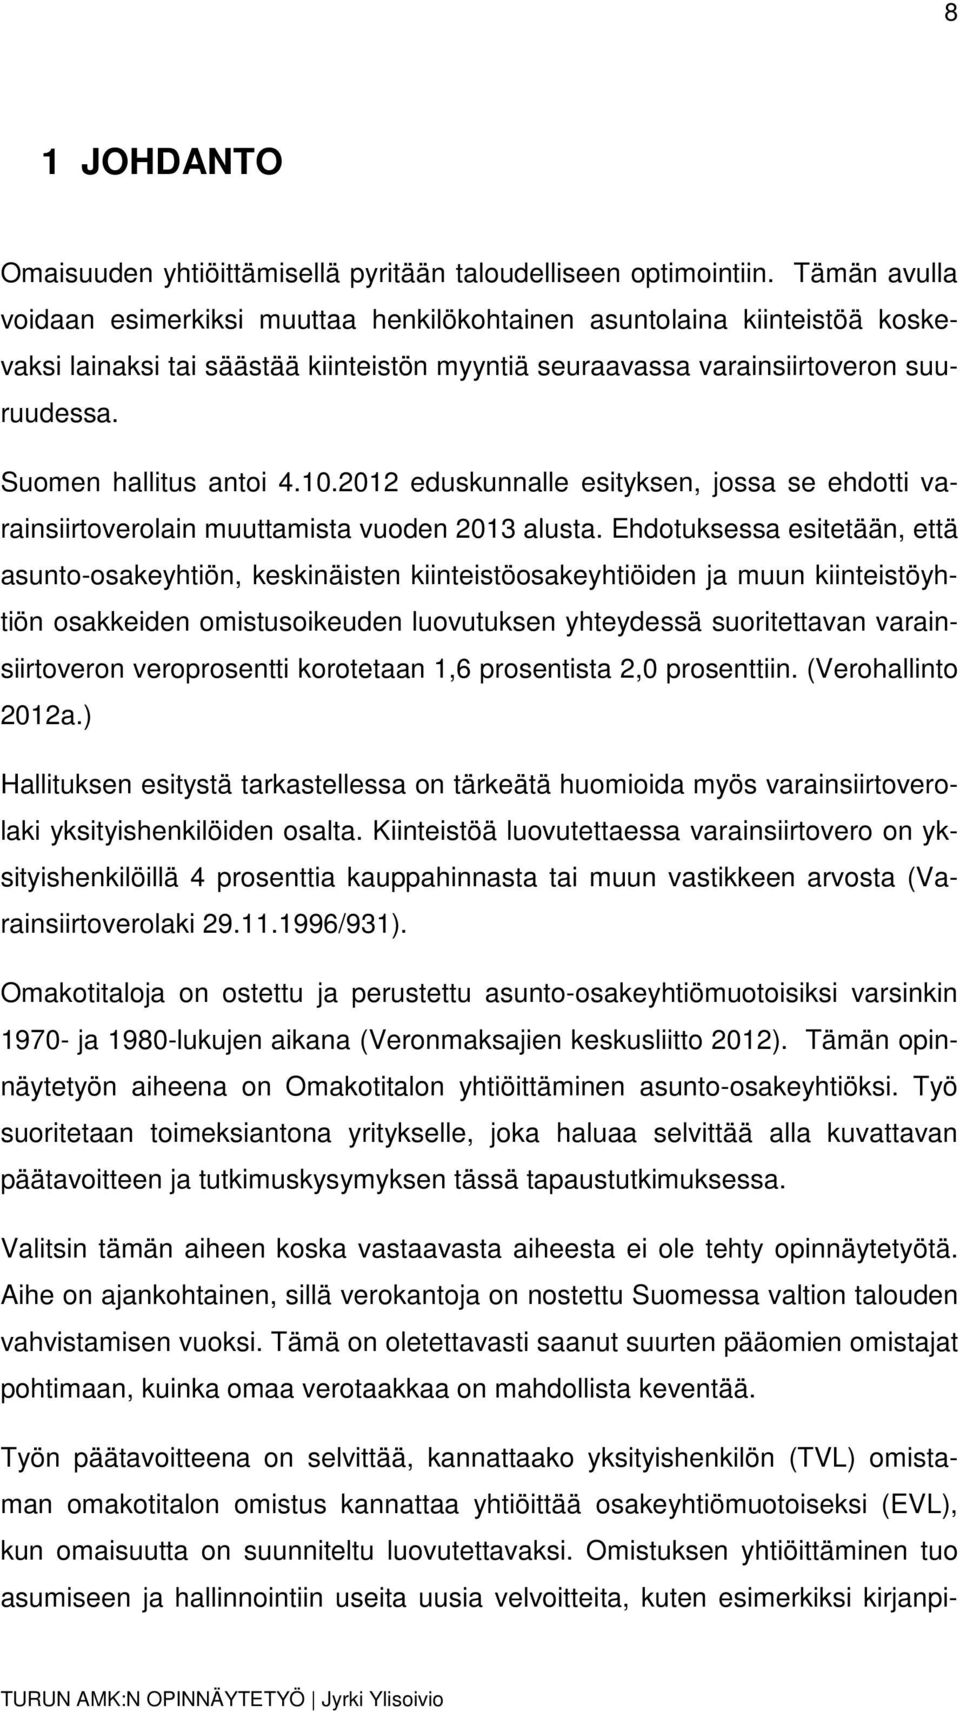 Suomen hallitus antoi 4.10.2012 eduskunnalle esityksen, jossa se ehdotti varainsiirtoverolain muuttamista vuoden 2013 alusta.